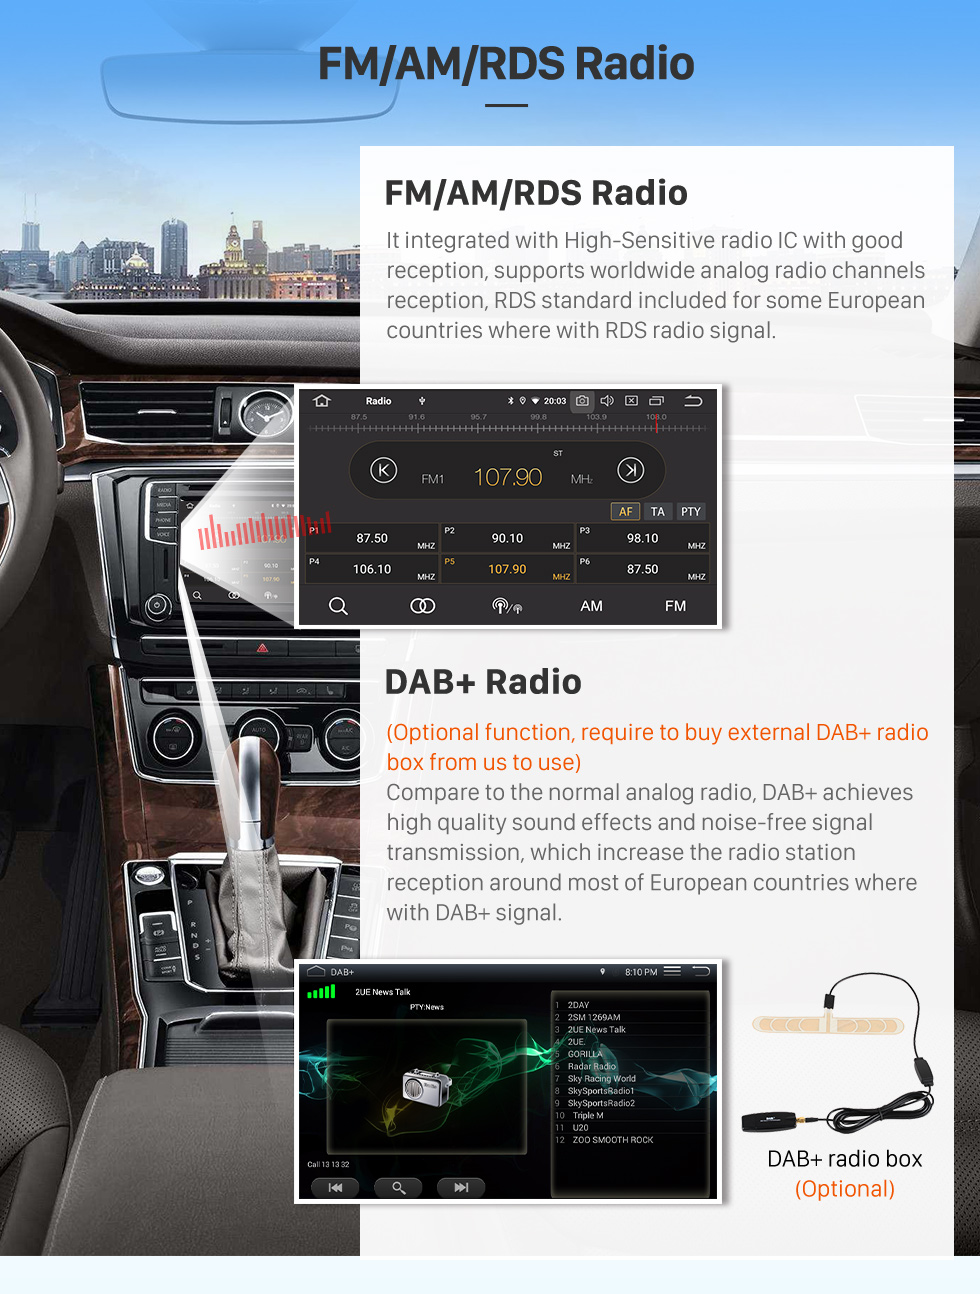 Seicane Carplay 9 pulgadas HD Pantalla táctil Android 12.0 para 2020 DODGE RAM Navegación GPS Android Auto Unidad principal Soporte DAB + OBDII WiFi Control del volante